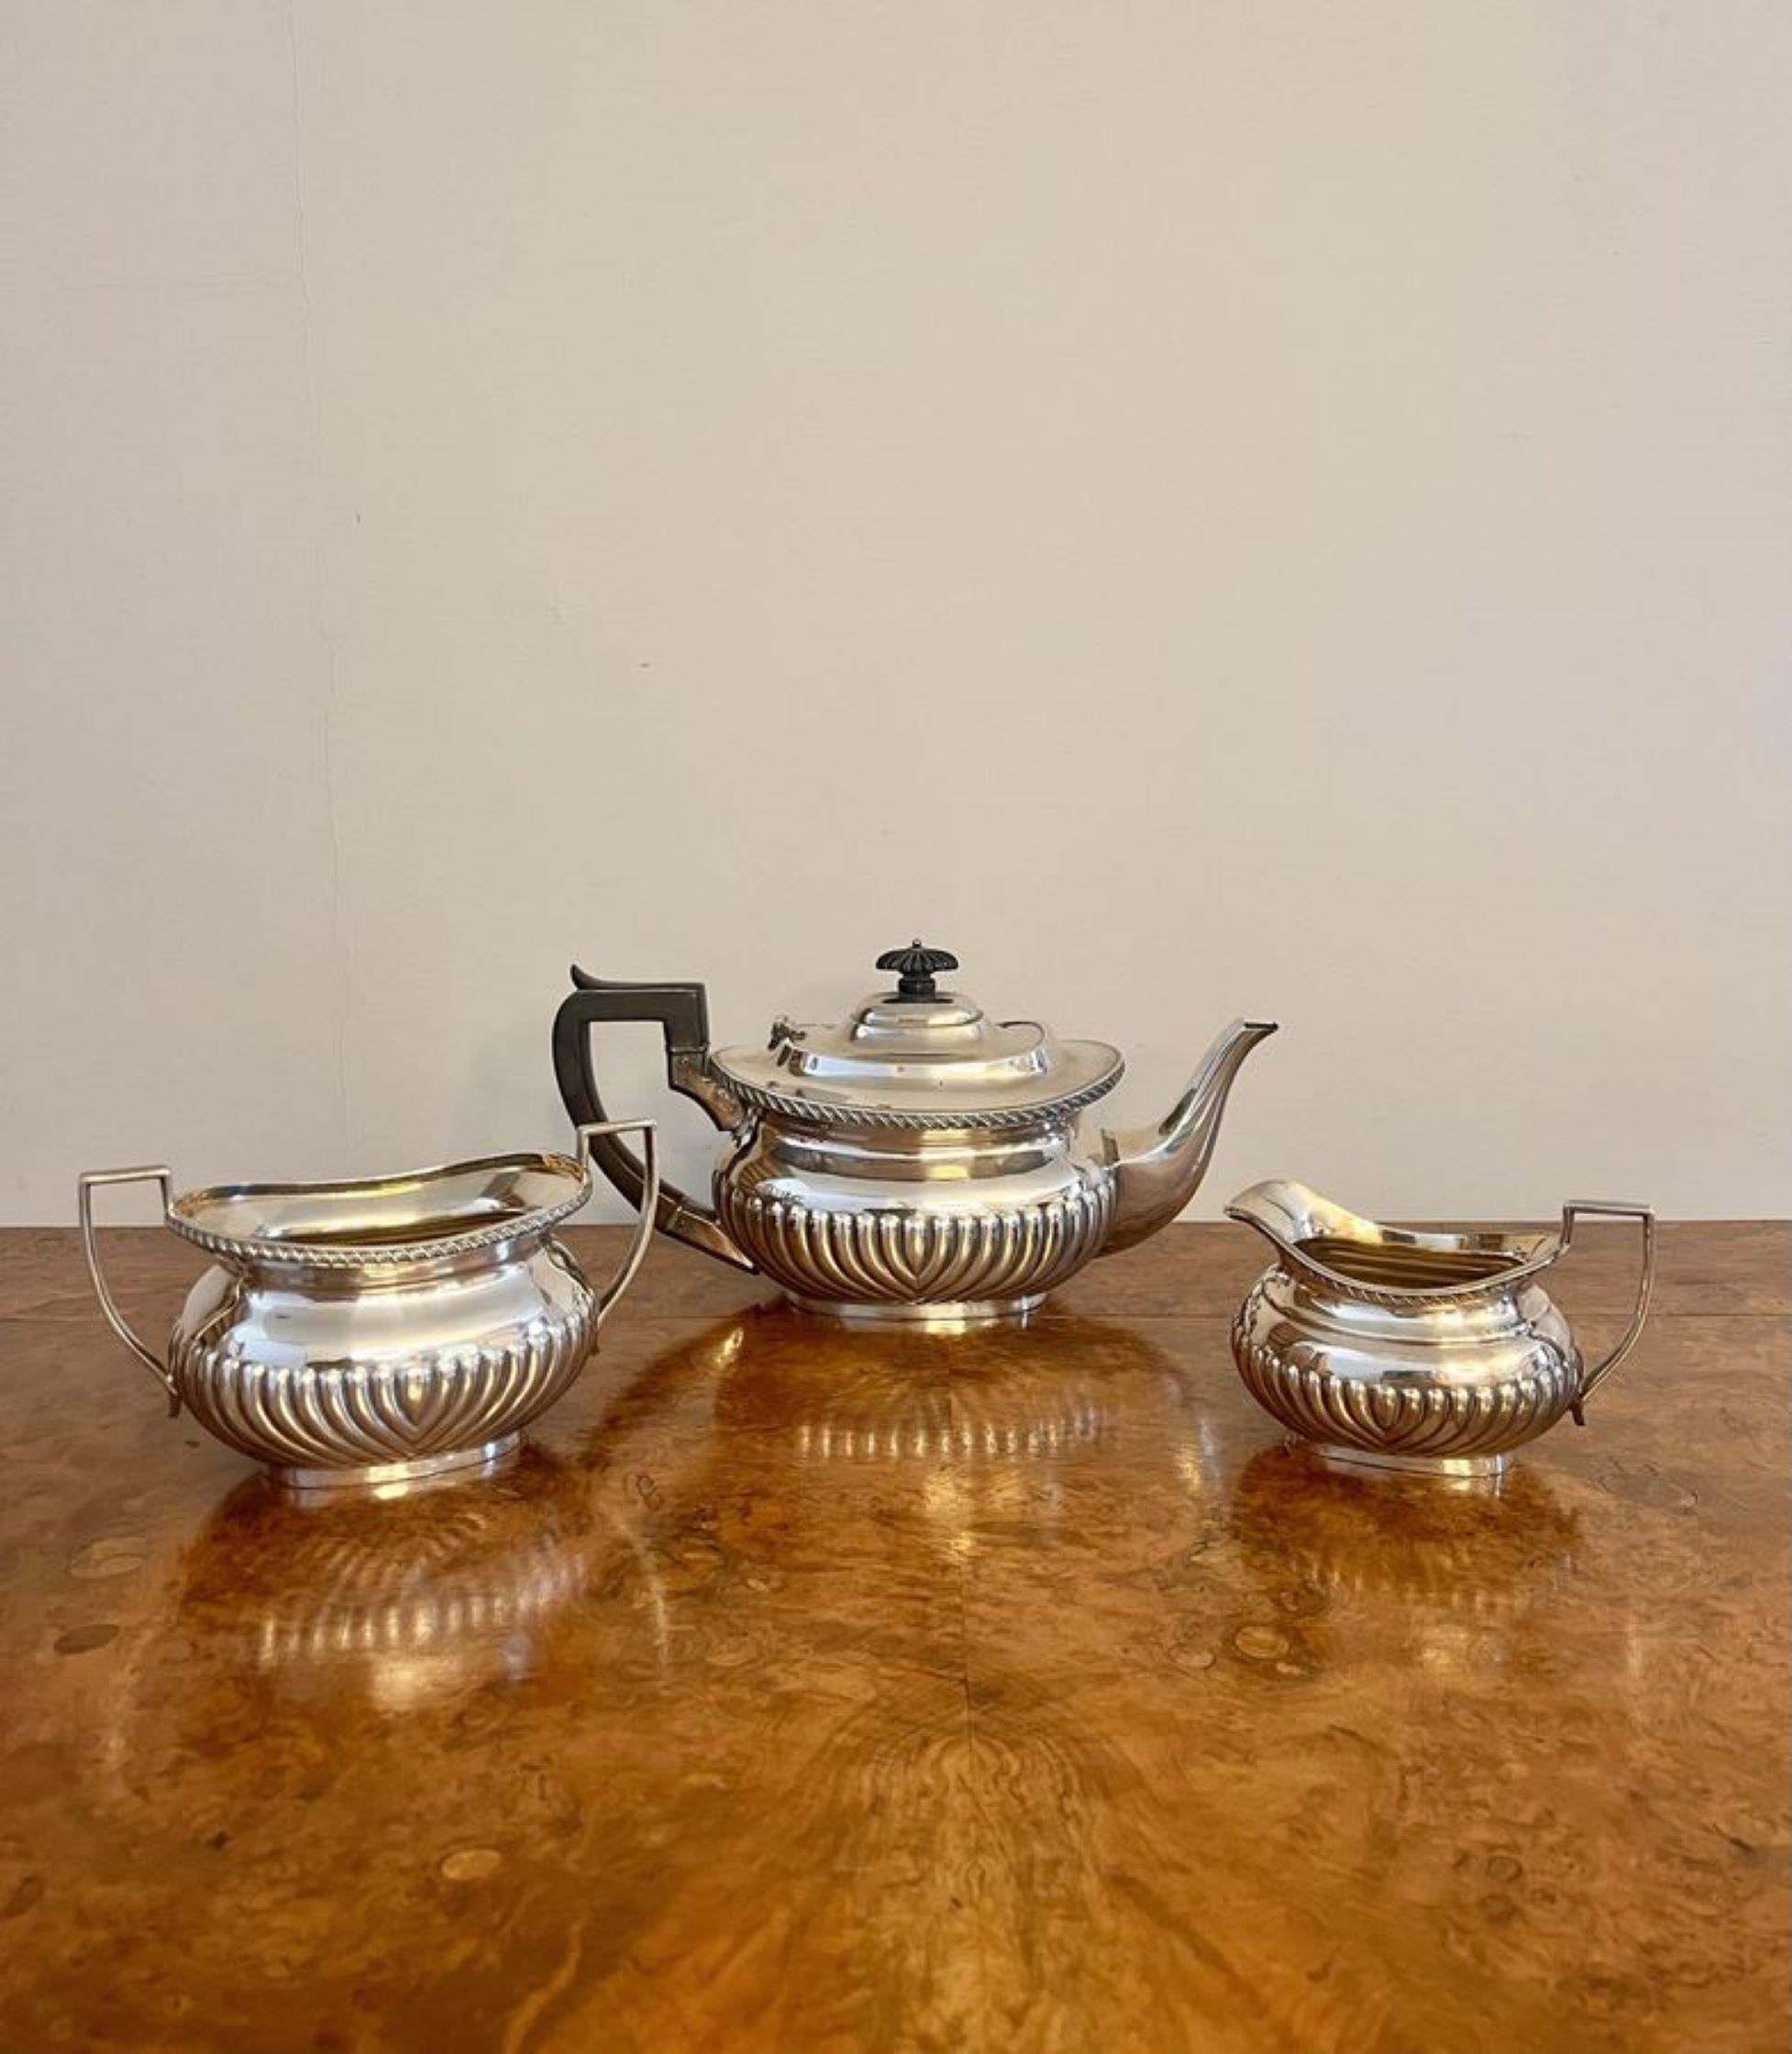 Wunderbare Qualität antike Edwardian dreiteilige Tee-Set mit einer Qualität antike Edwardian versilbert dreiteilige Tee-Set, bestehend aus einer Teekanne, Zuckerdose und Milchkännchen. 

D. 1900